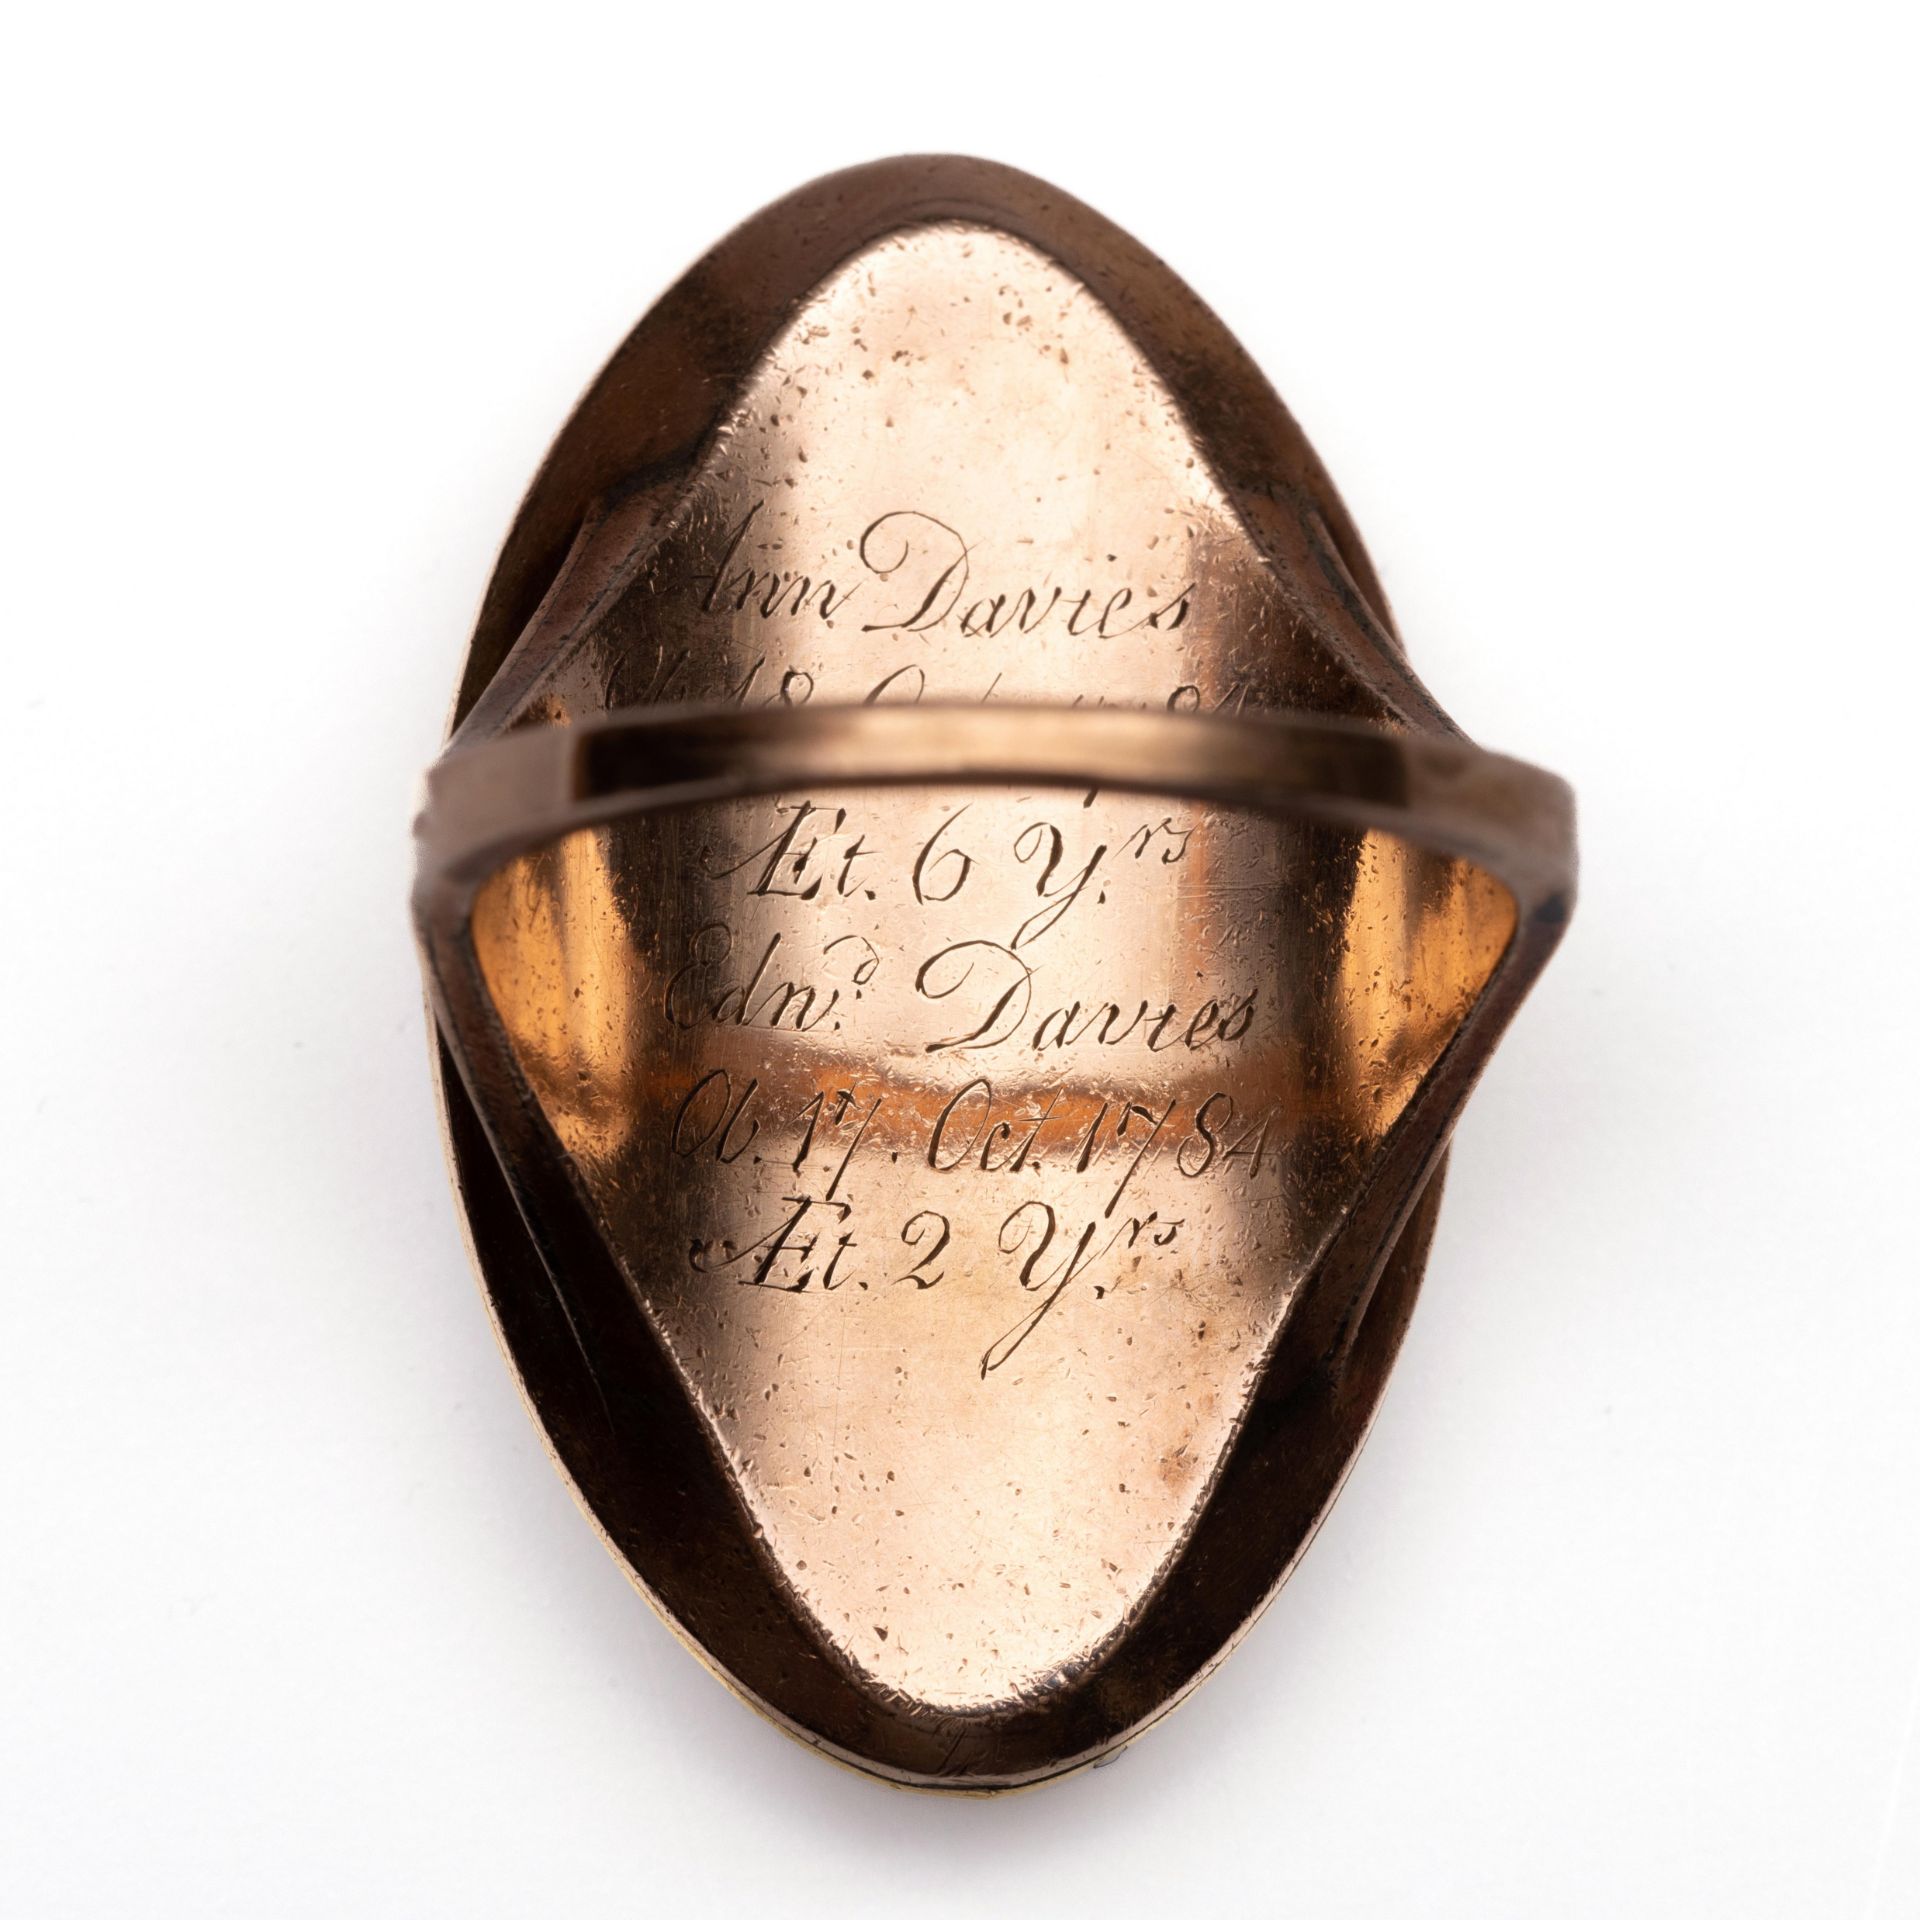 Beneden wettelijk gehalte markiesvormige gouden rouw ring, ca 1800. - Image 3 of 3